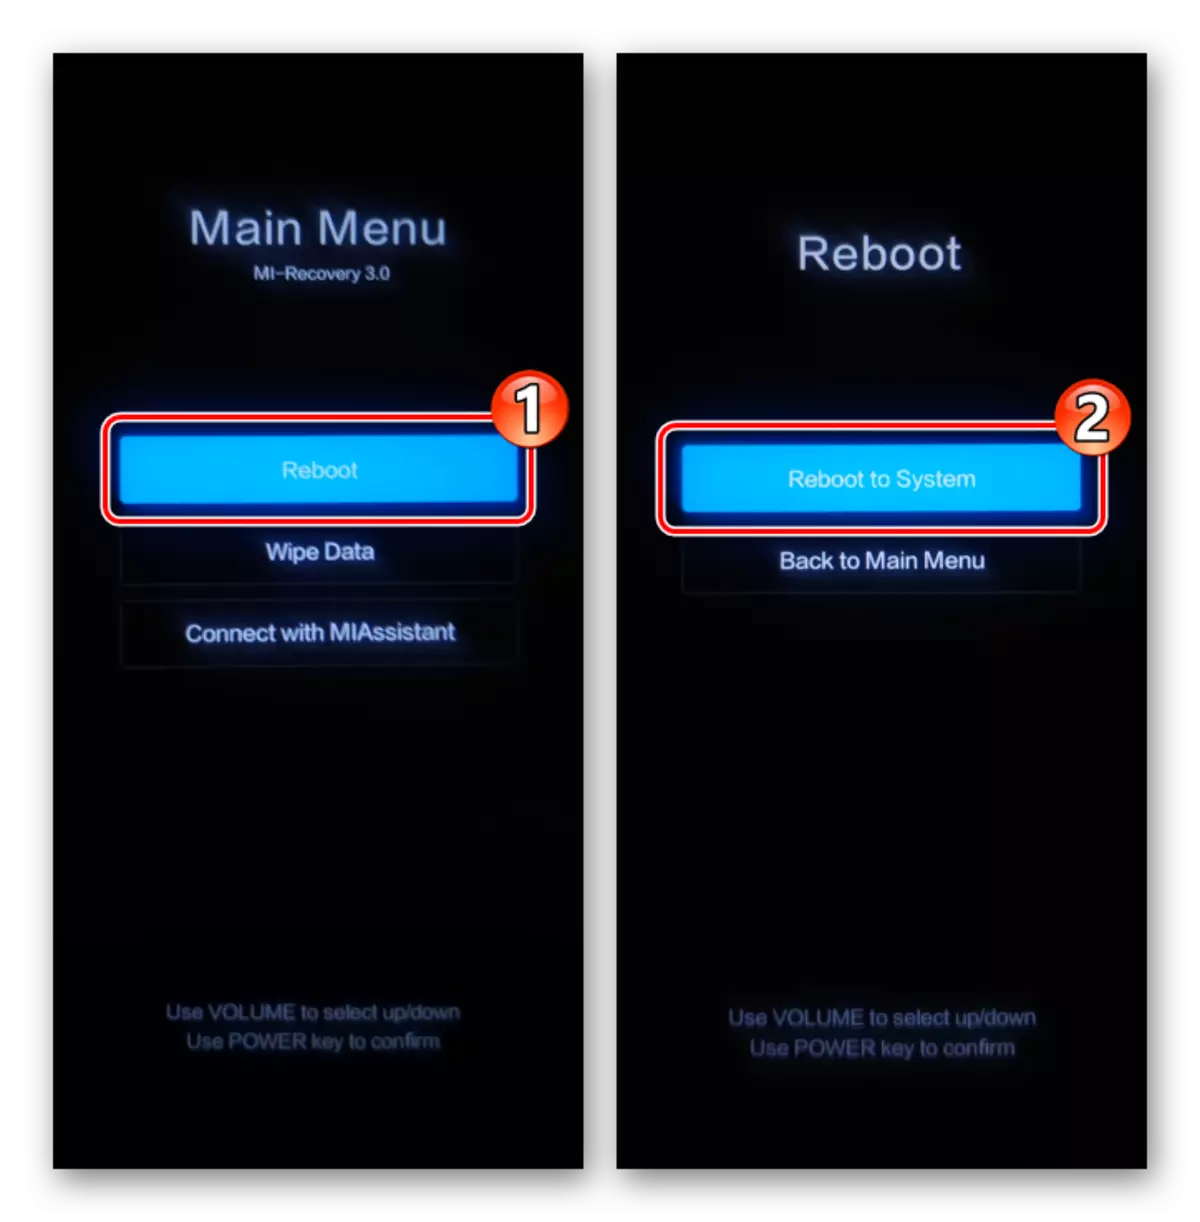 Xiaomi MIUI Factory rekaveri - herlaai die stelsel met die Reboot funksie in Main Menu